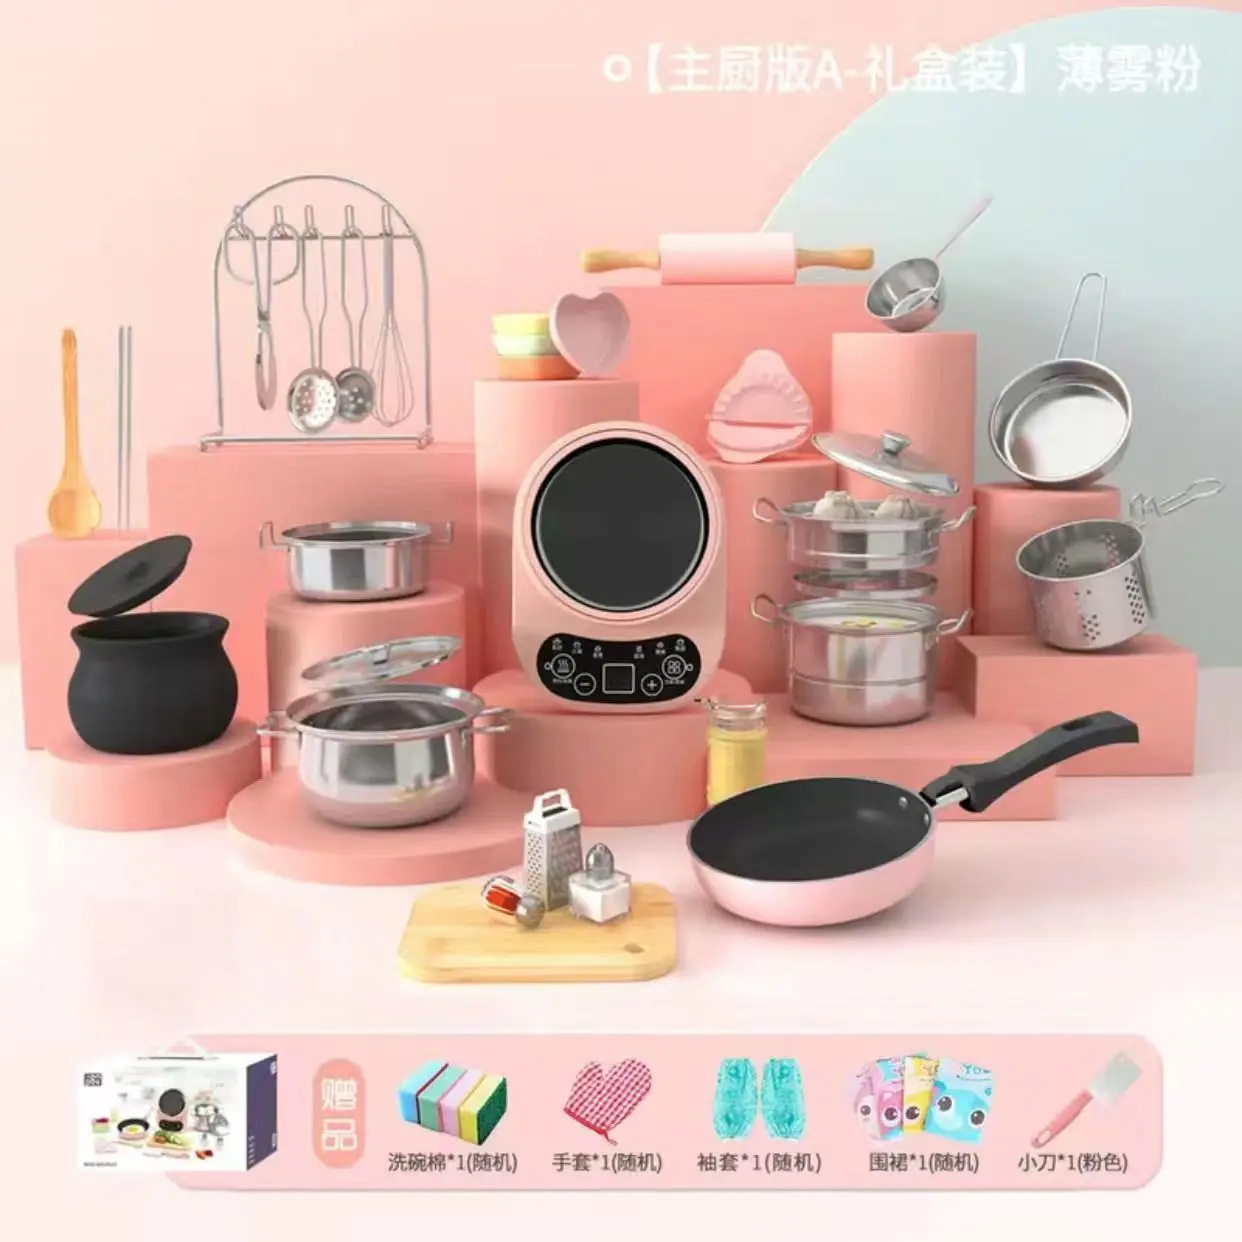 juguetes-de-cocina-de-simulacion-divertidos-para-ninos-utensilios-de-cocina-pequenos-reales-juguetes-de-rompecabezas-educativos-de-desarrollo-de-interes-de-cocina